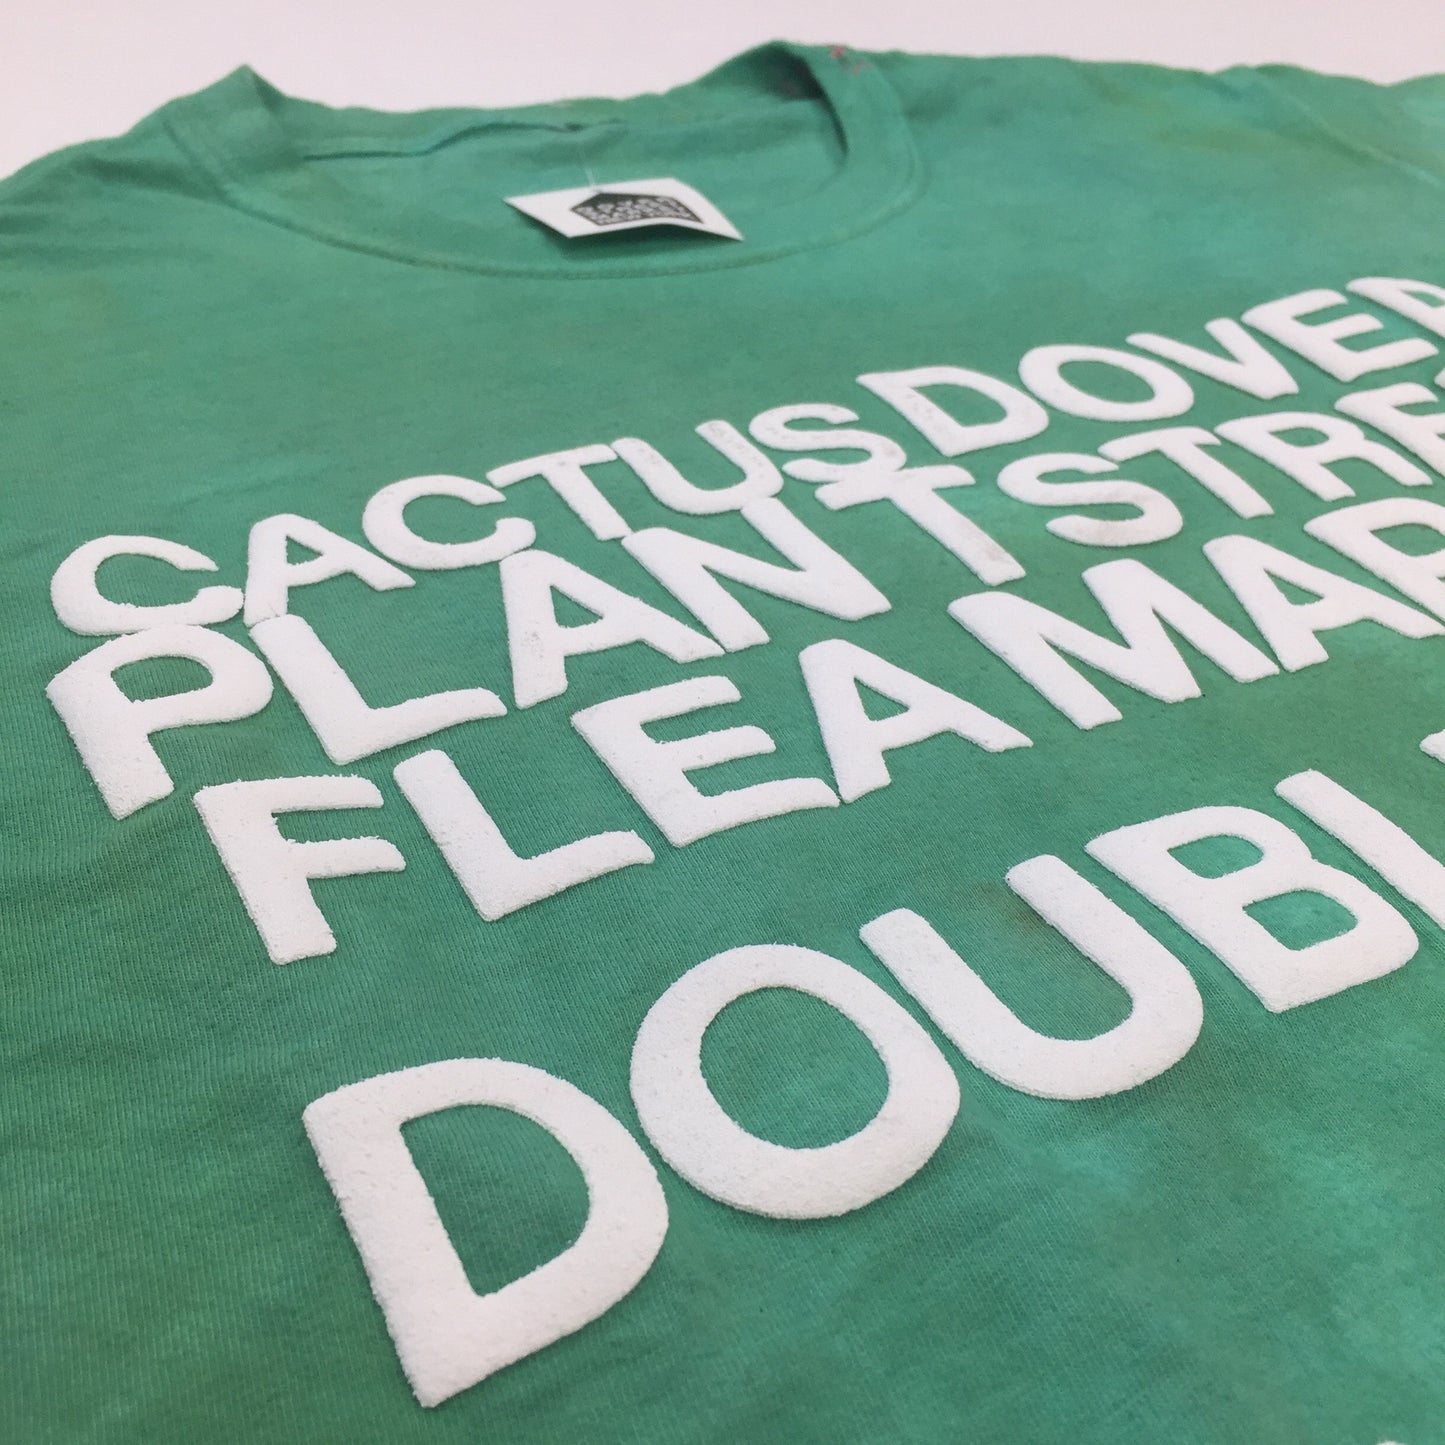 Cactus Plant Flea Market x DSM - Green 'Double Vision' T-Shirt